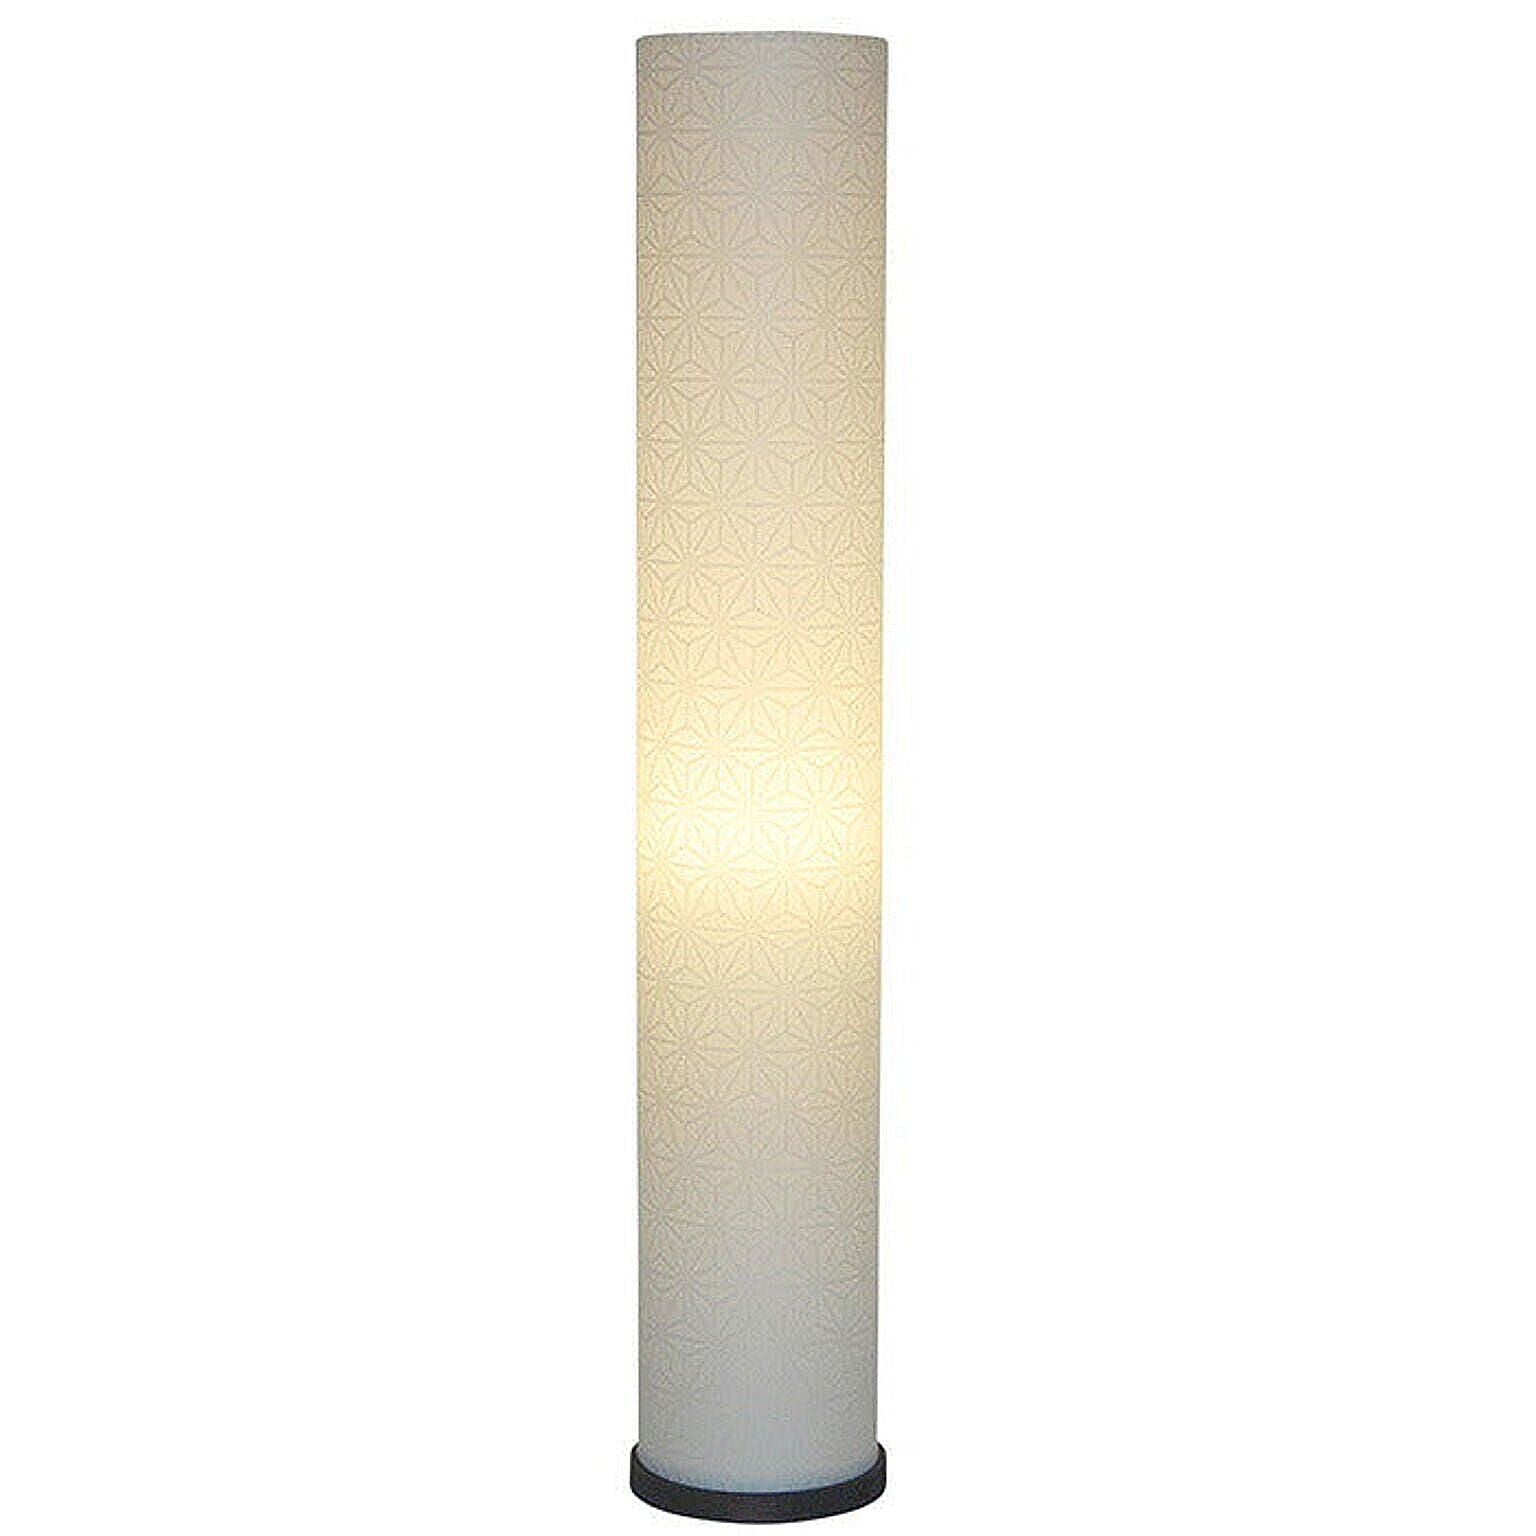 フロアライト 和紙 roll s 特麻葉白 電球付属 幅130x奥行130x高さ750mm 彩光デザイン